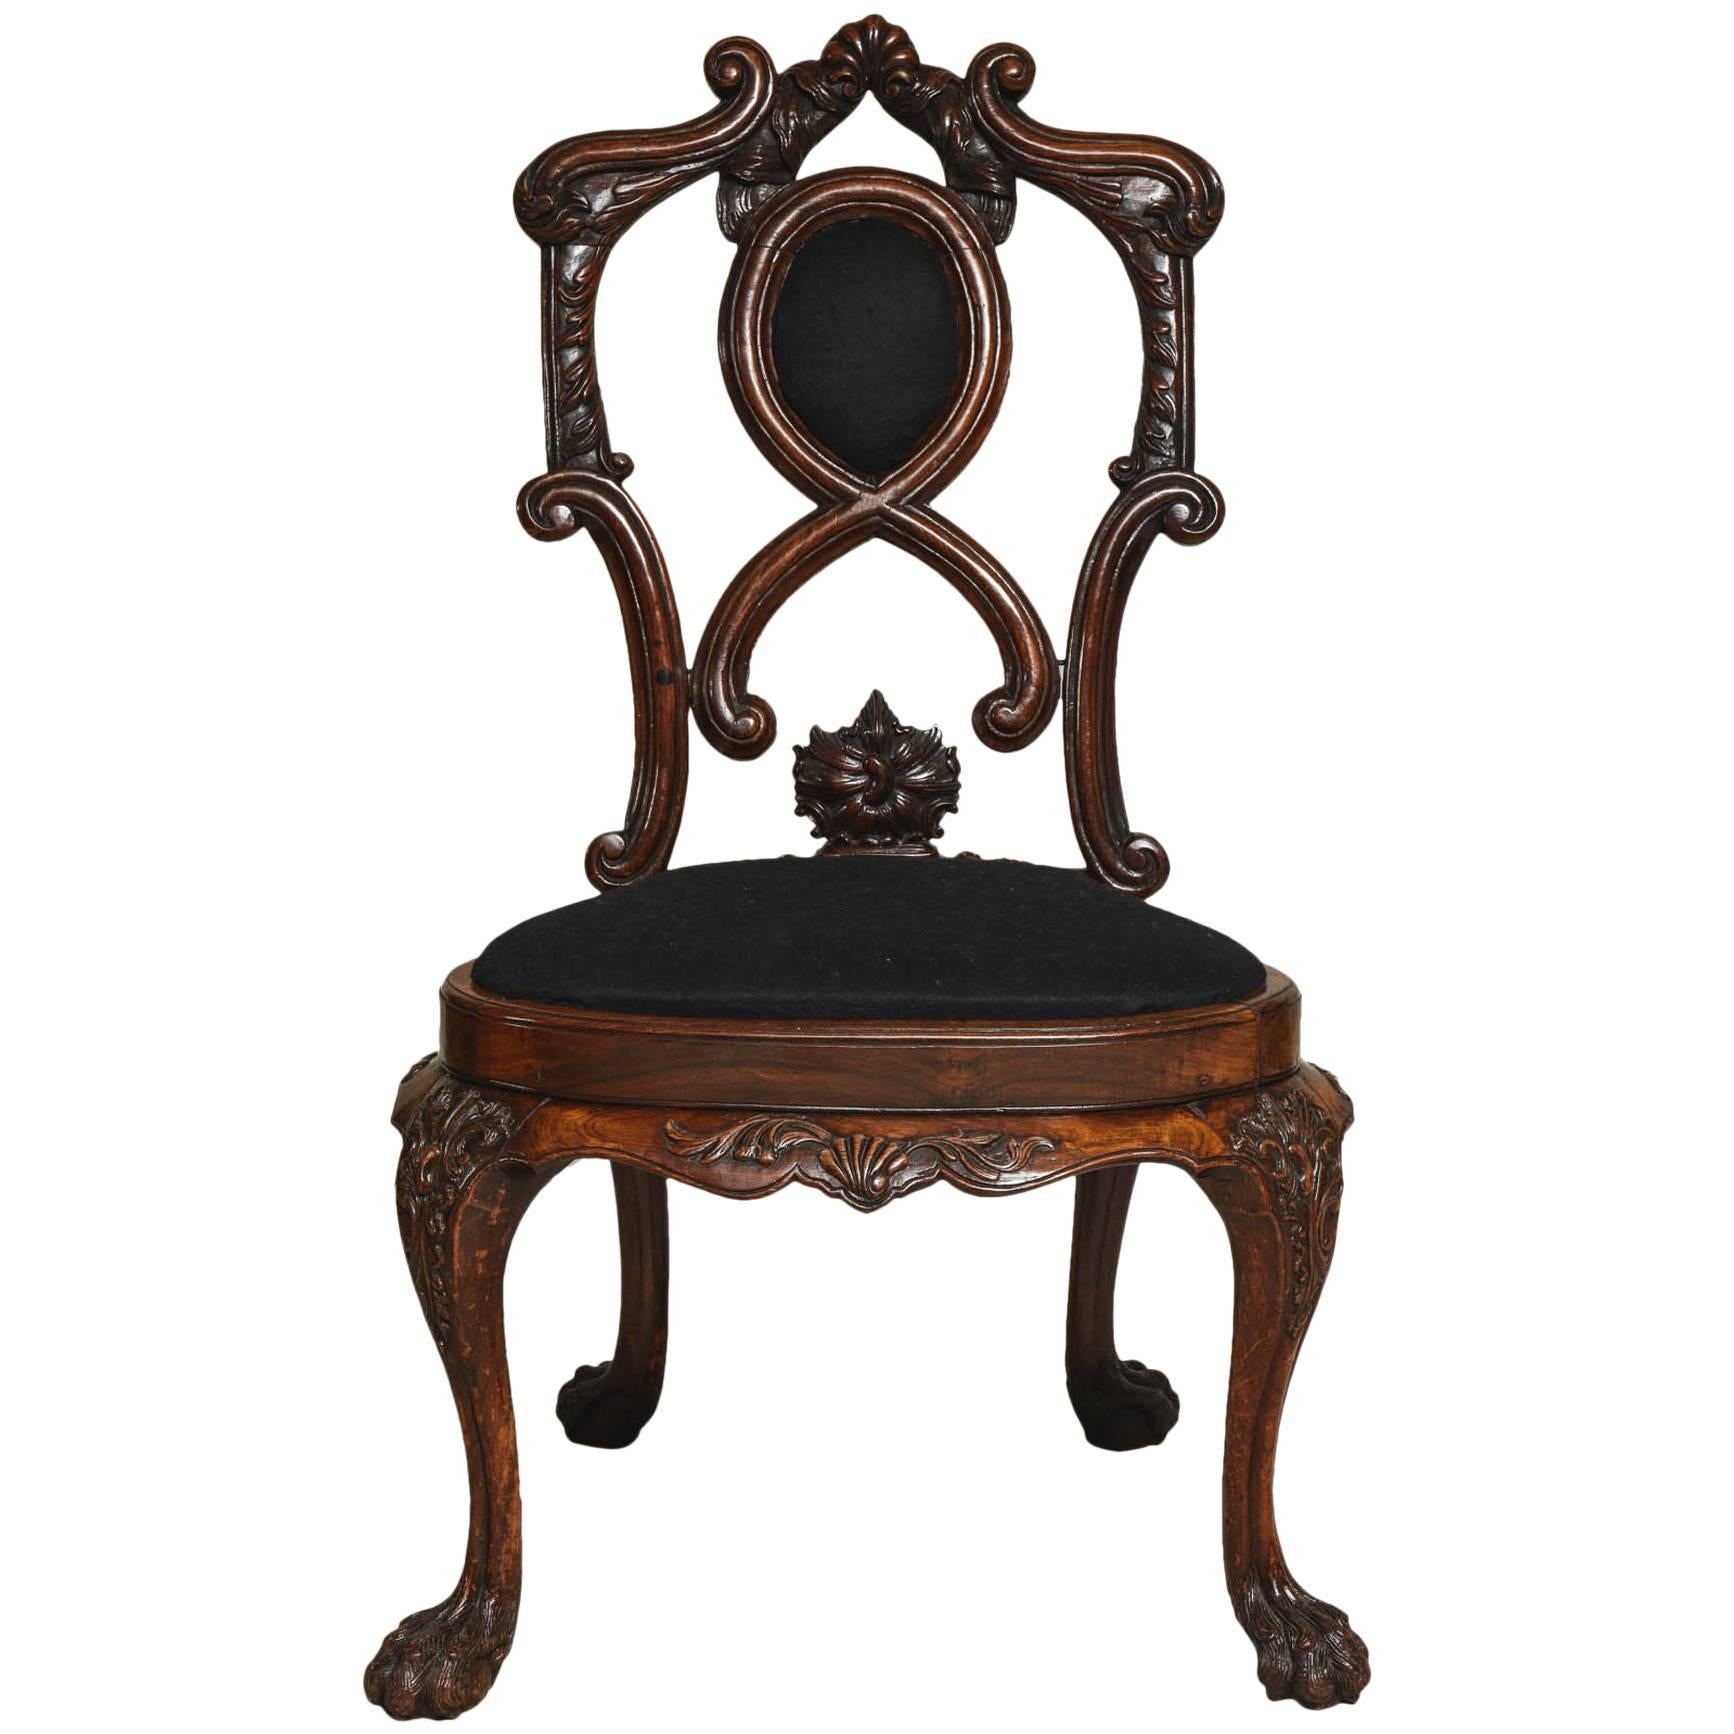 Importante chaise portugaise du 18ème siècle